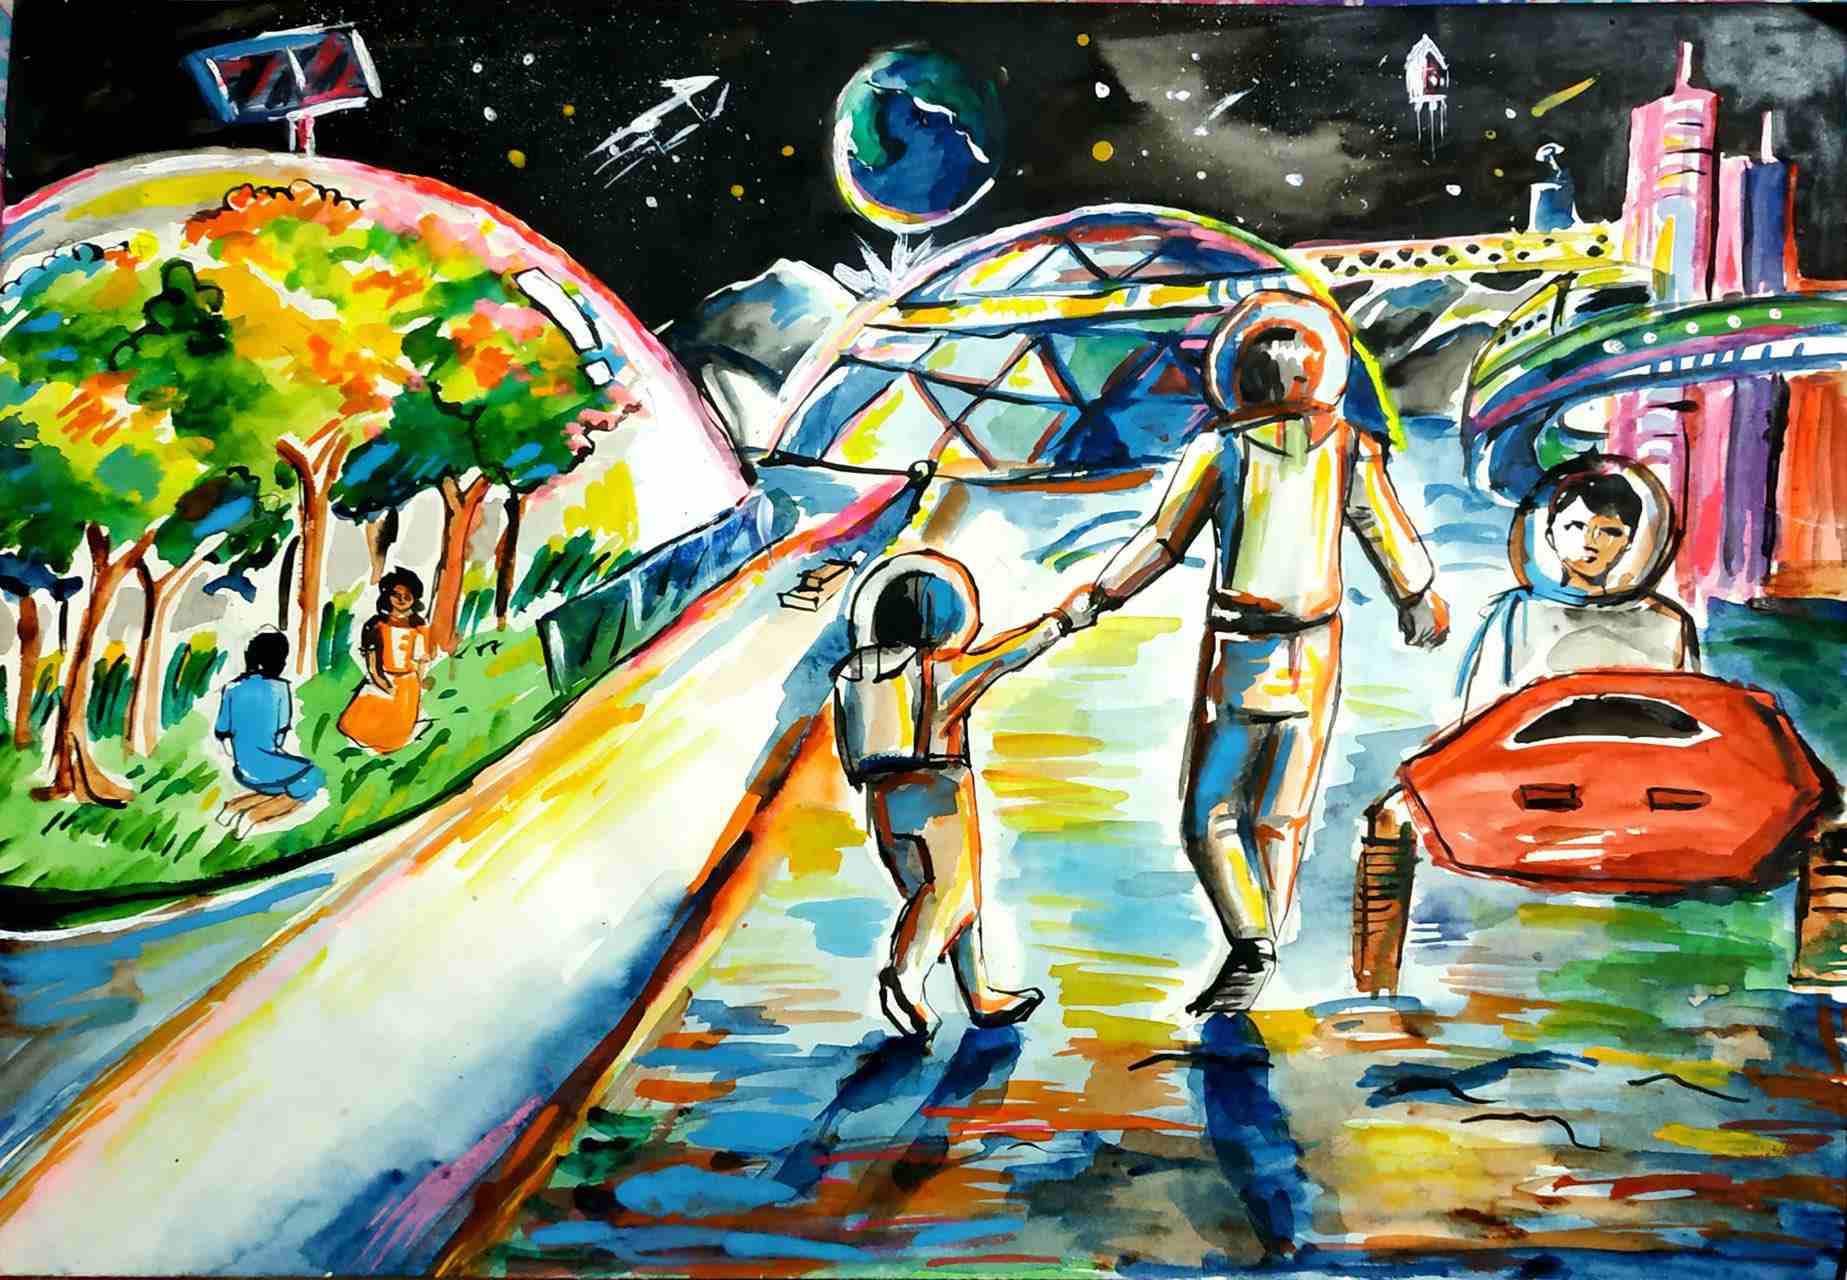 航天日绘画作品《梦想太空》,孟加拉国Jannatul Ferdouse